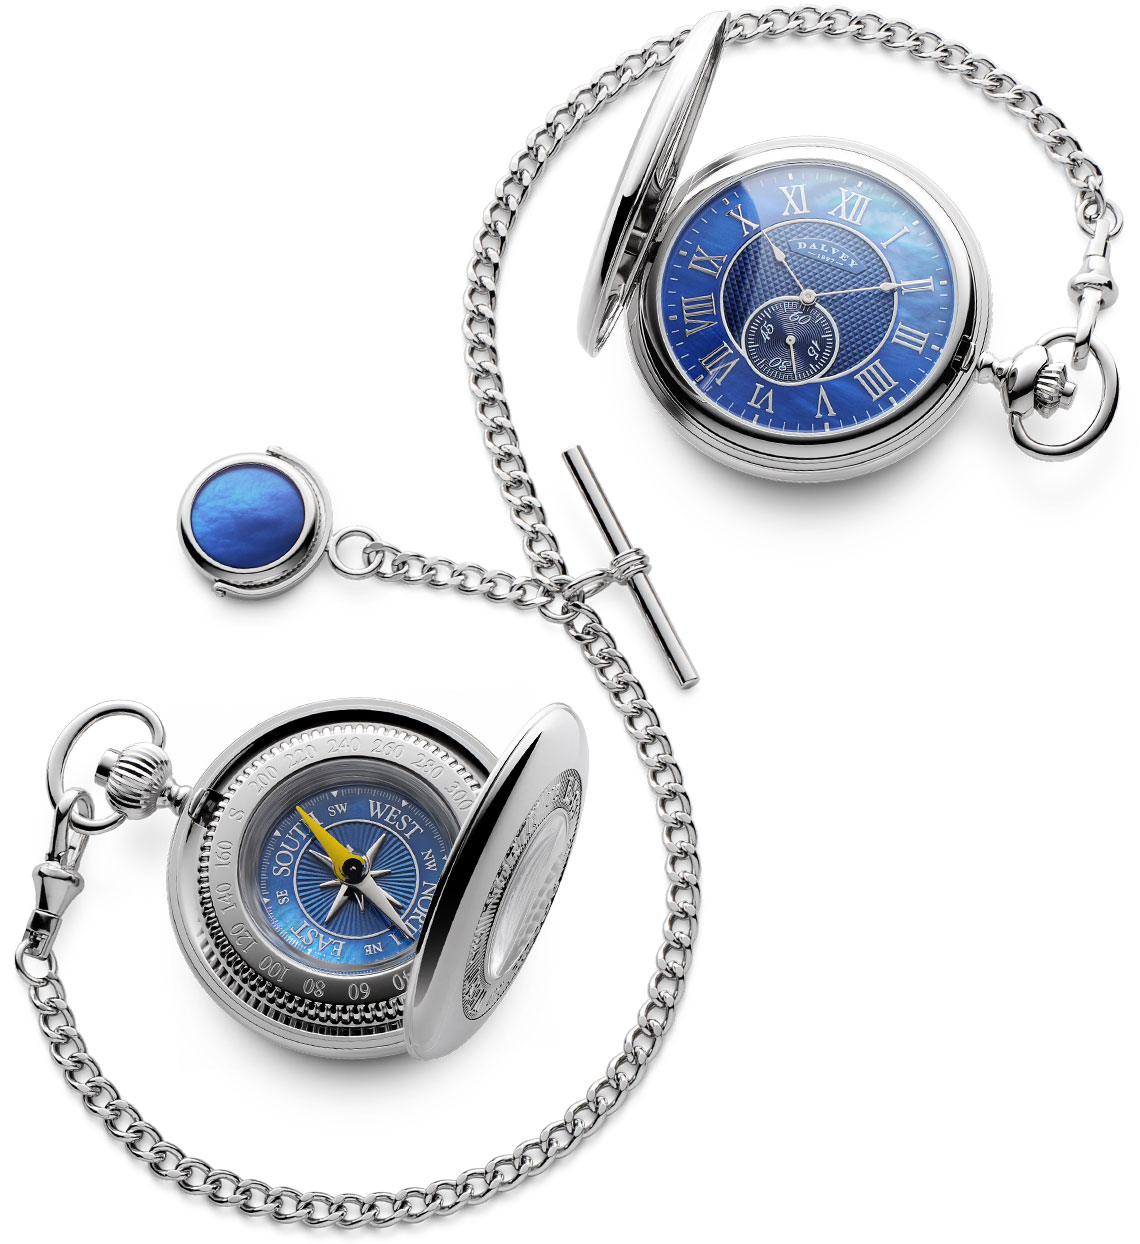 Fondos global Alivio Pocket Watch Pocket Compass and Double Albert Gift Set Blue MOP (aus/nz) -  Dalvey